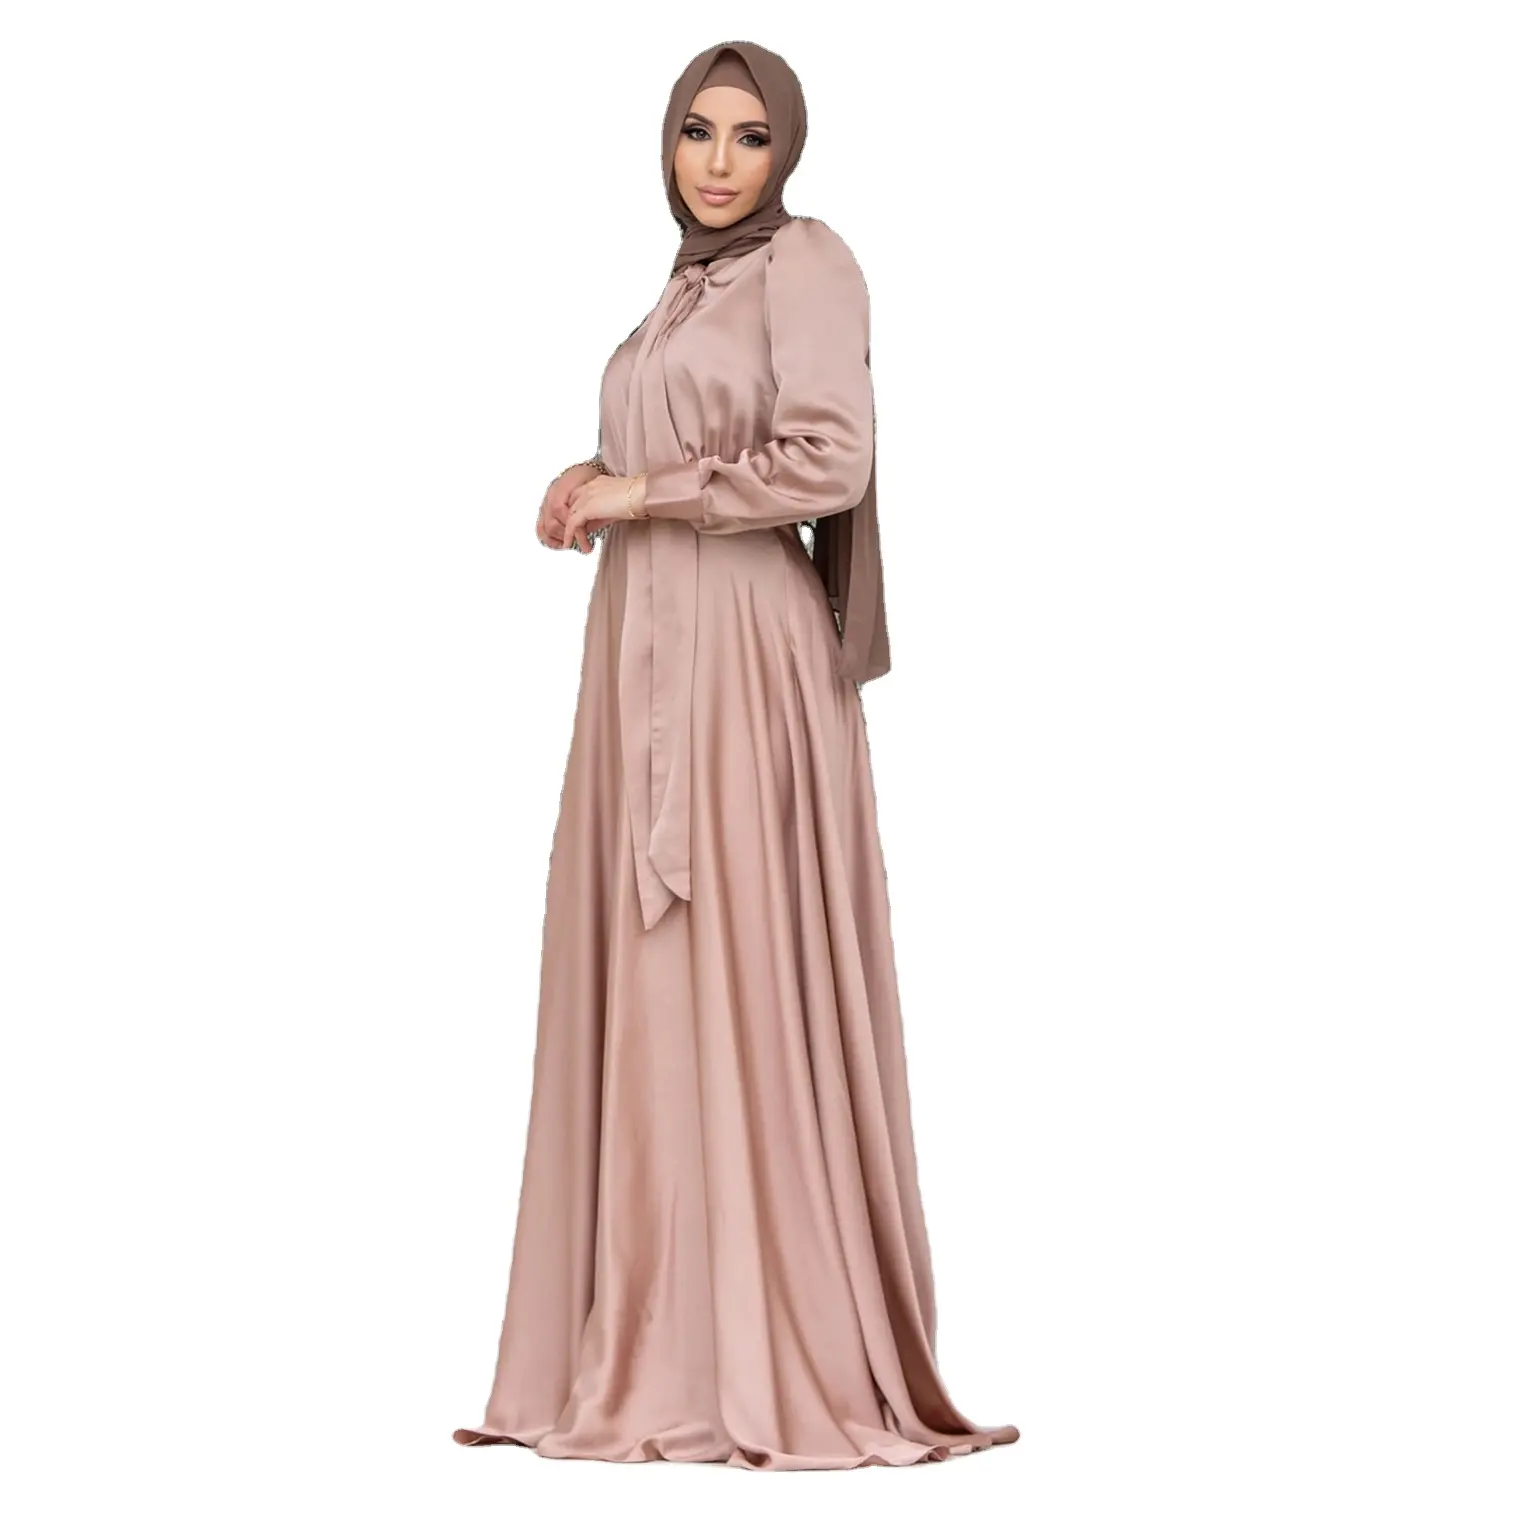 무슬림 여성의 원피스 파티 원피스 큰 치마 스윙 새틴 원피스 허리 넥타이 디자인